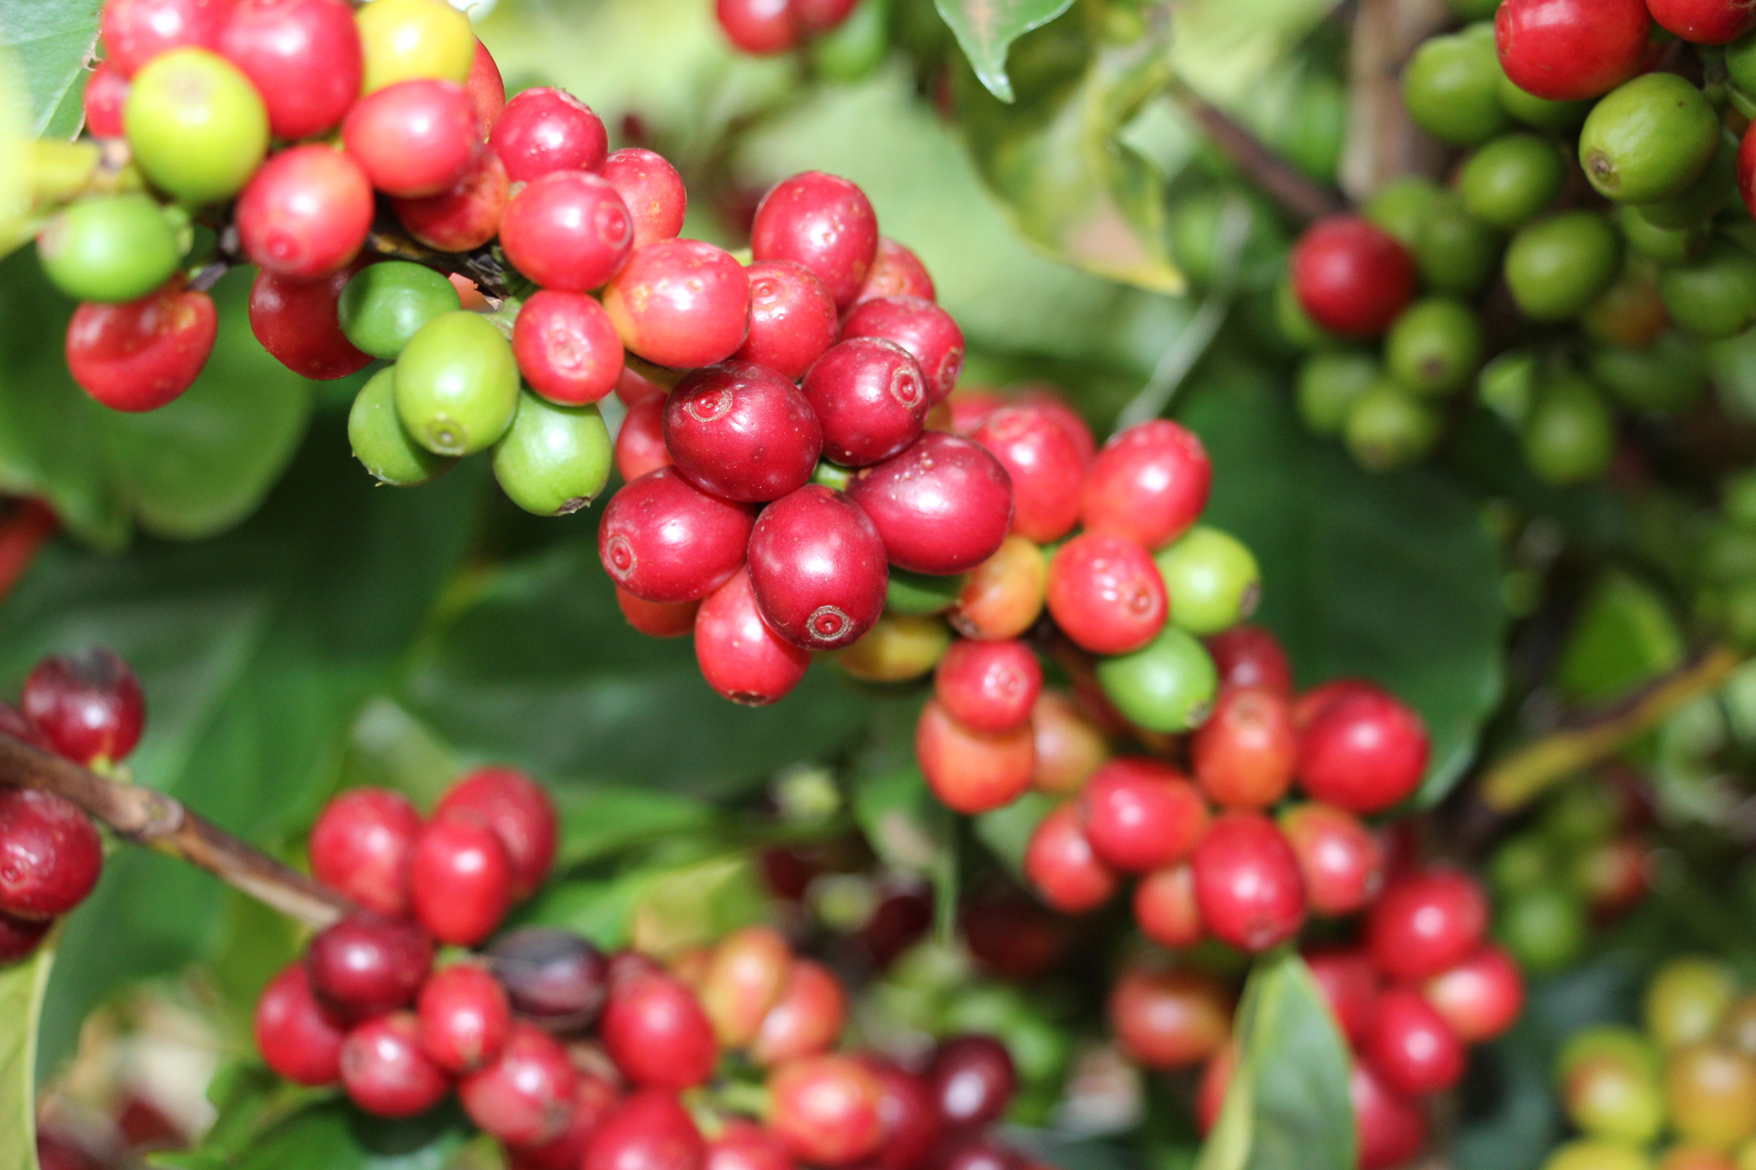 8152 - Cultivar de café Catiguá 3 - pesquisa mineira desenvolveu mais de 15 variedades de café para o clima e solo de Minas Gerais - Foto Samantha Mapa